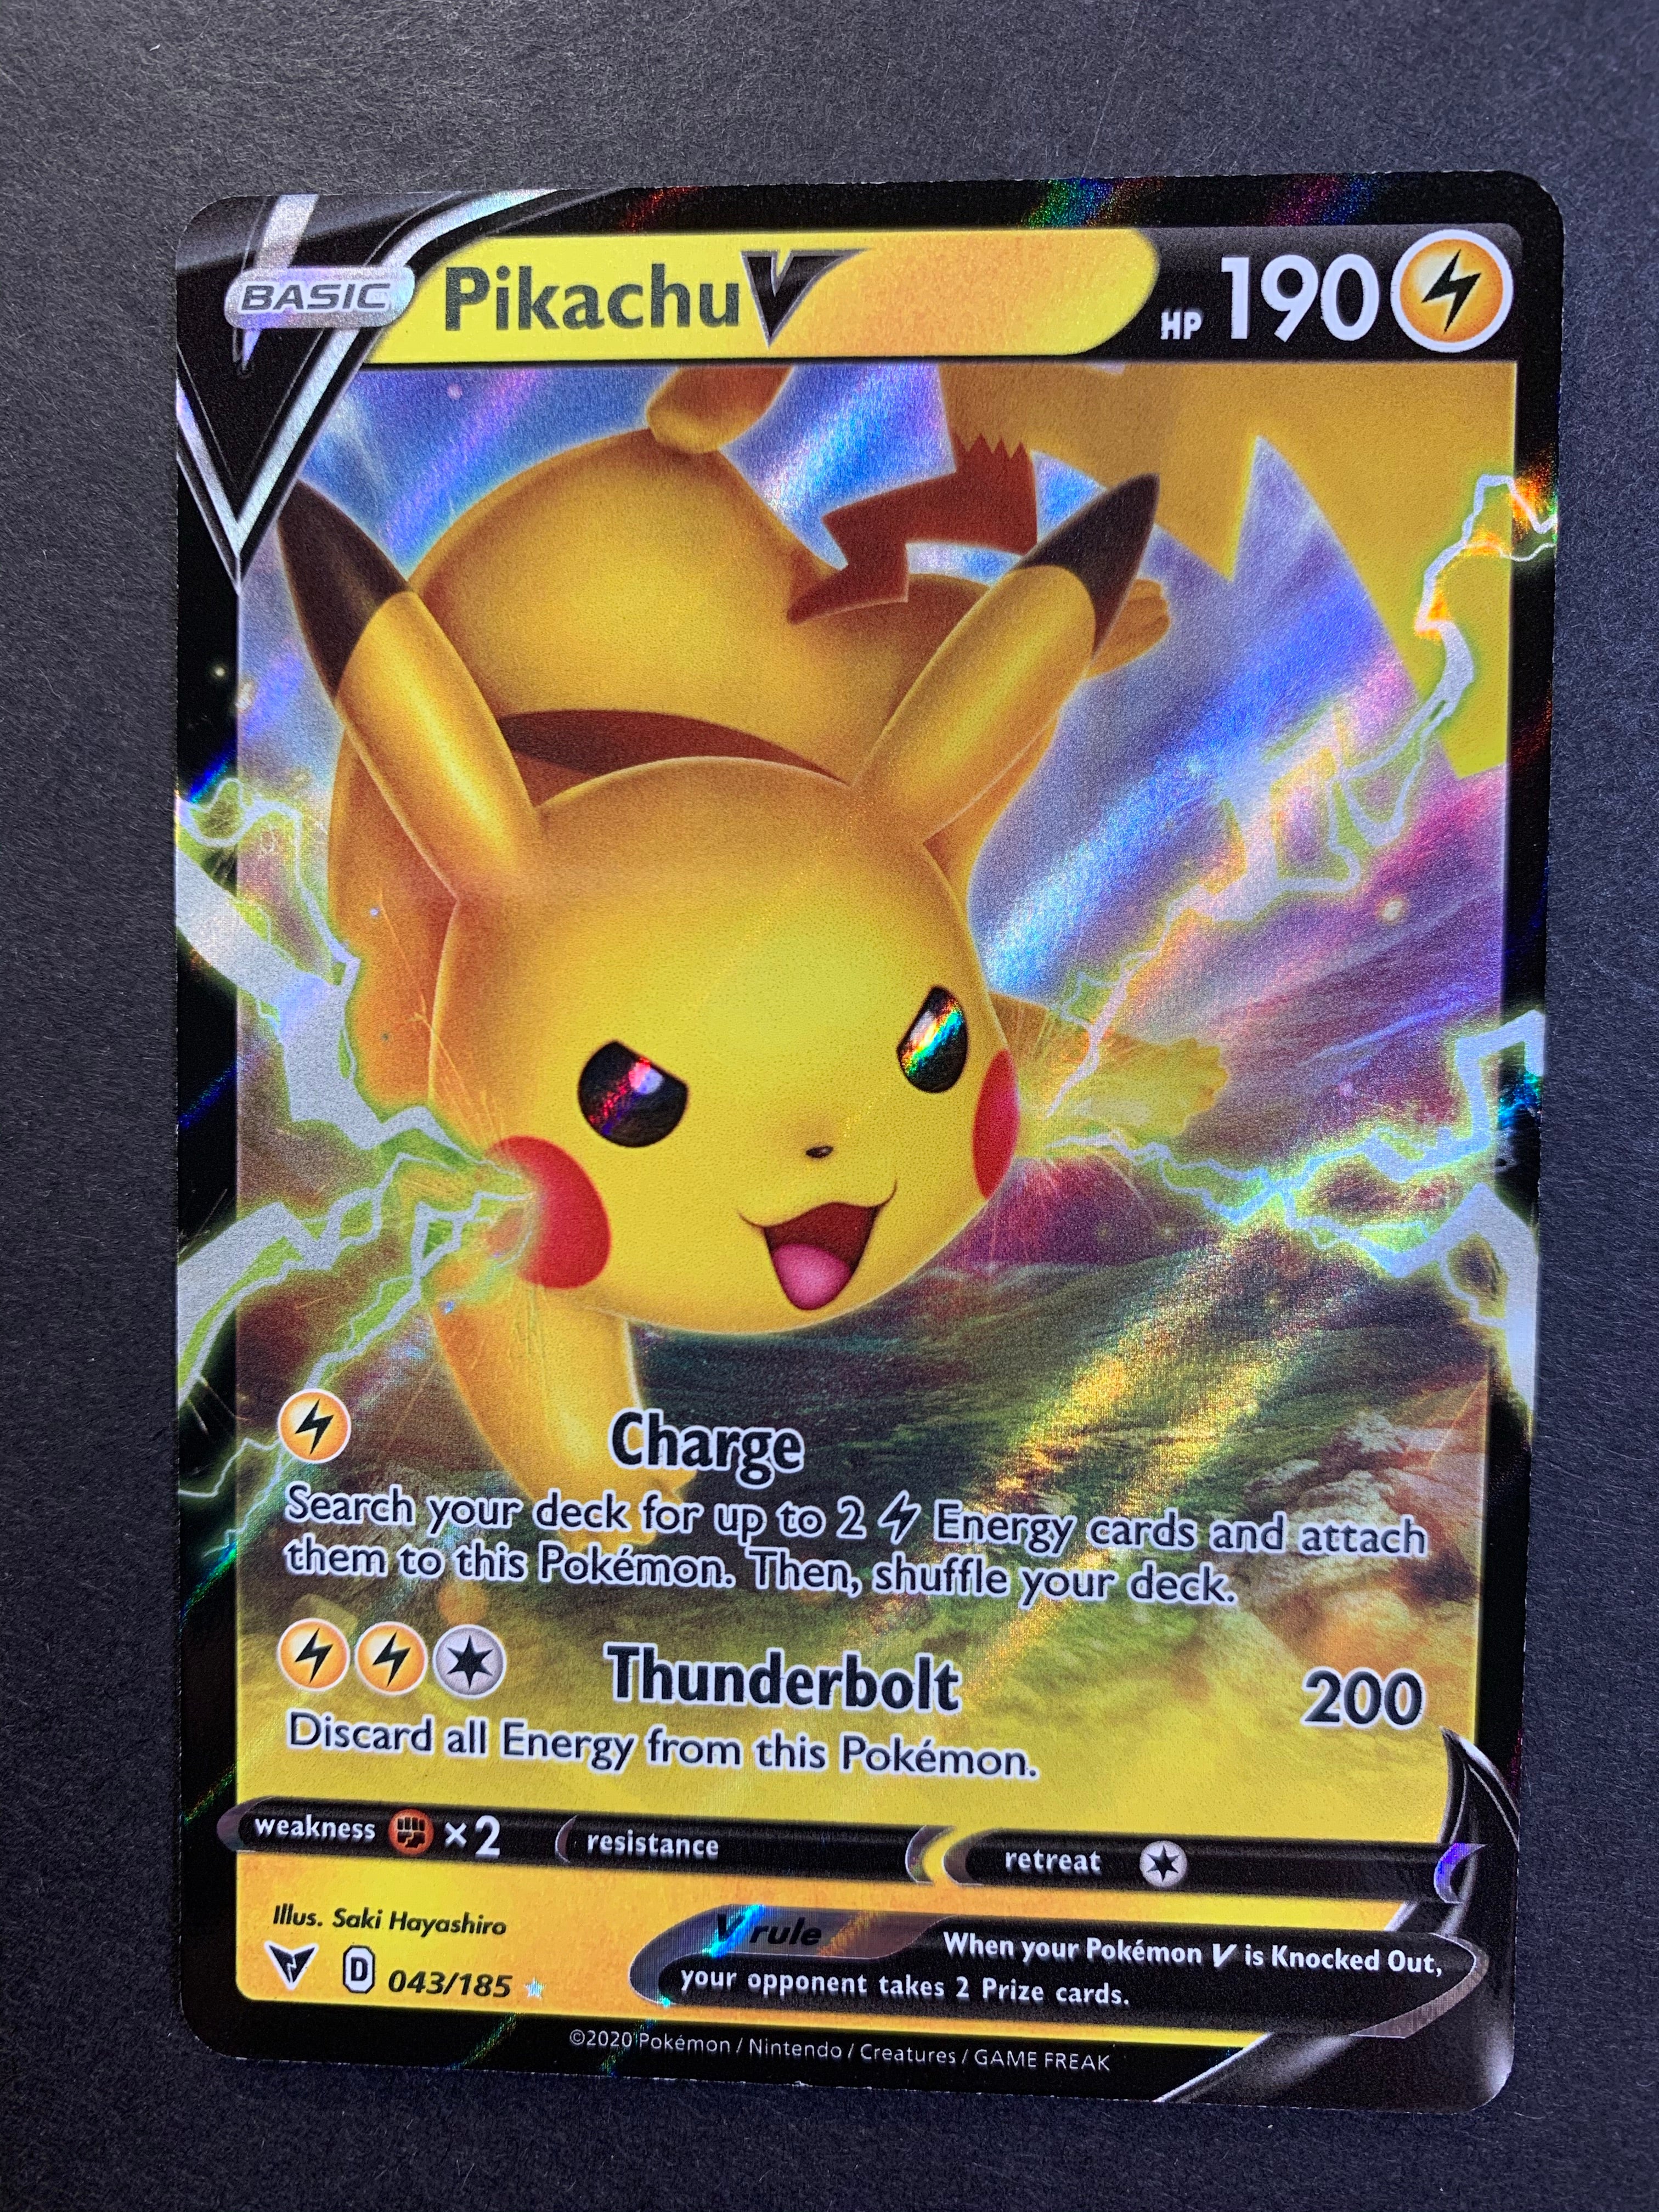 Pikachu-V (86/264), Busca de Cards